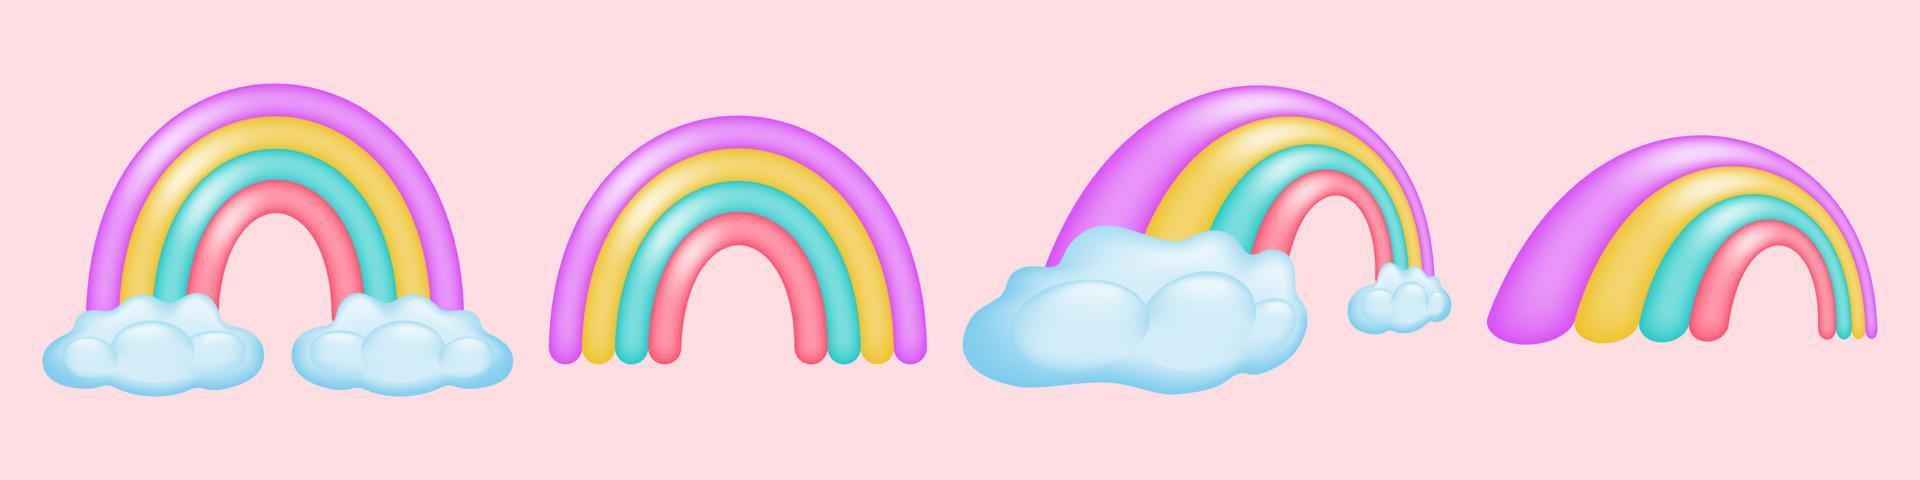 einstellen von bunt 3d Regenbögen im anders Positionen. süß hell Regenbogen und flauschige Wolken. perfekt zum Kinder Entwürfe, Sozial Medien Grafik und mehr. Vektor Illustration.